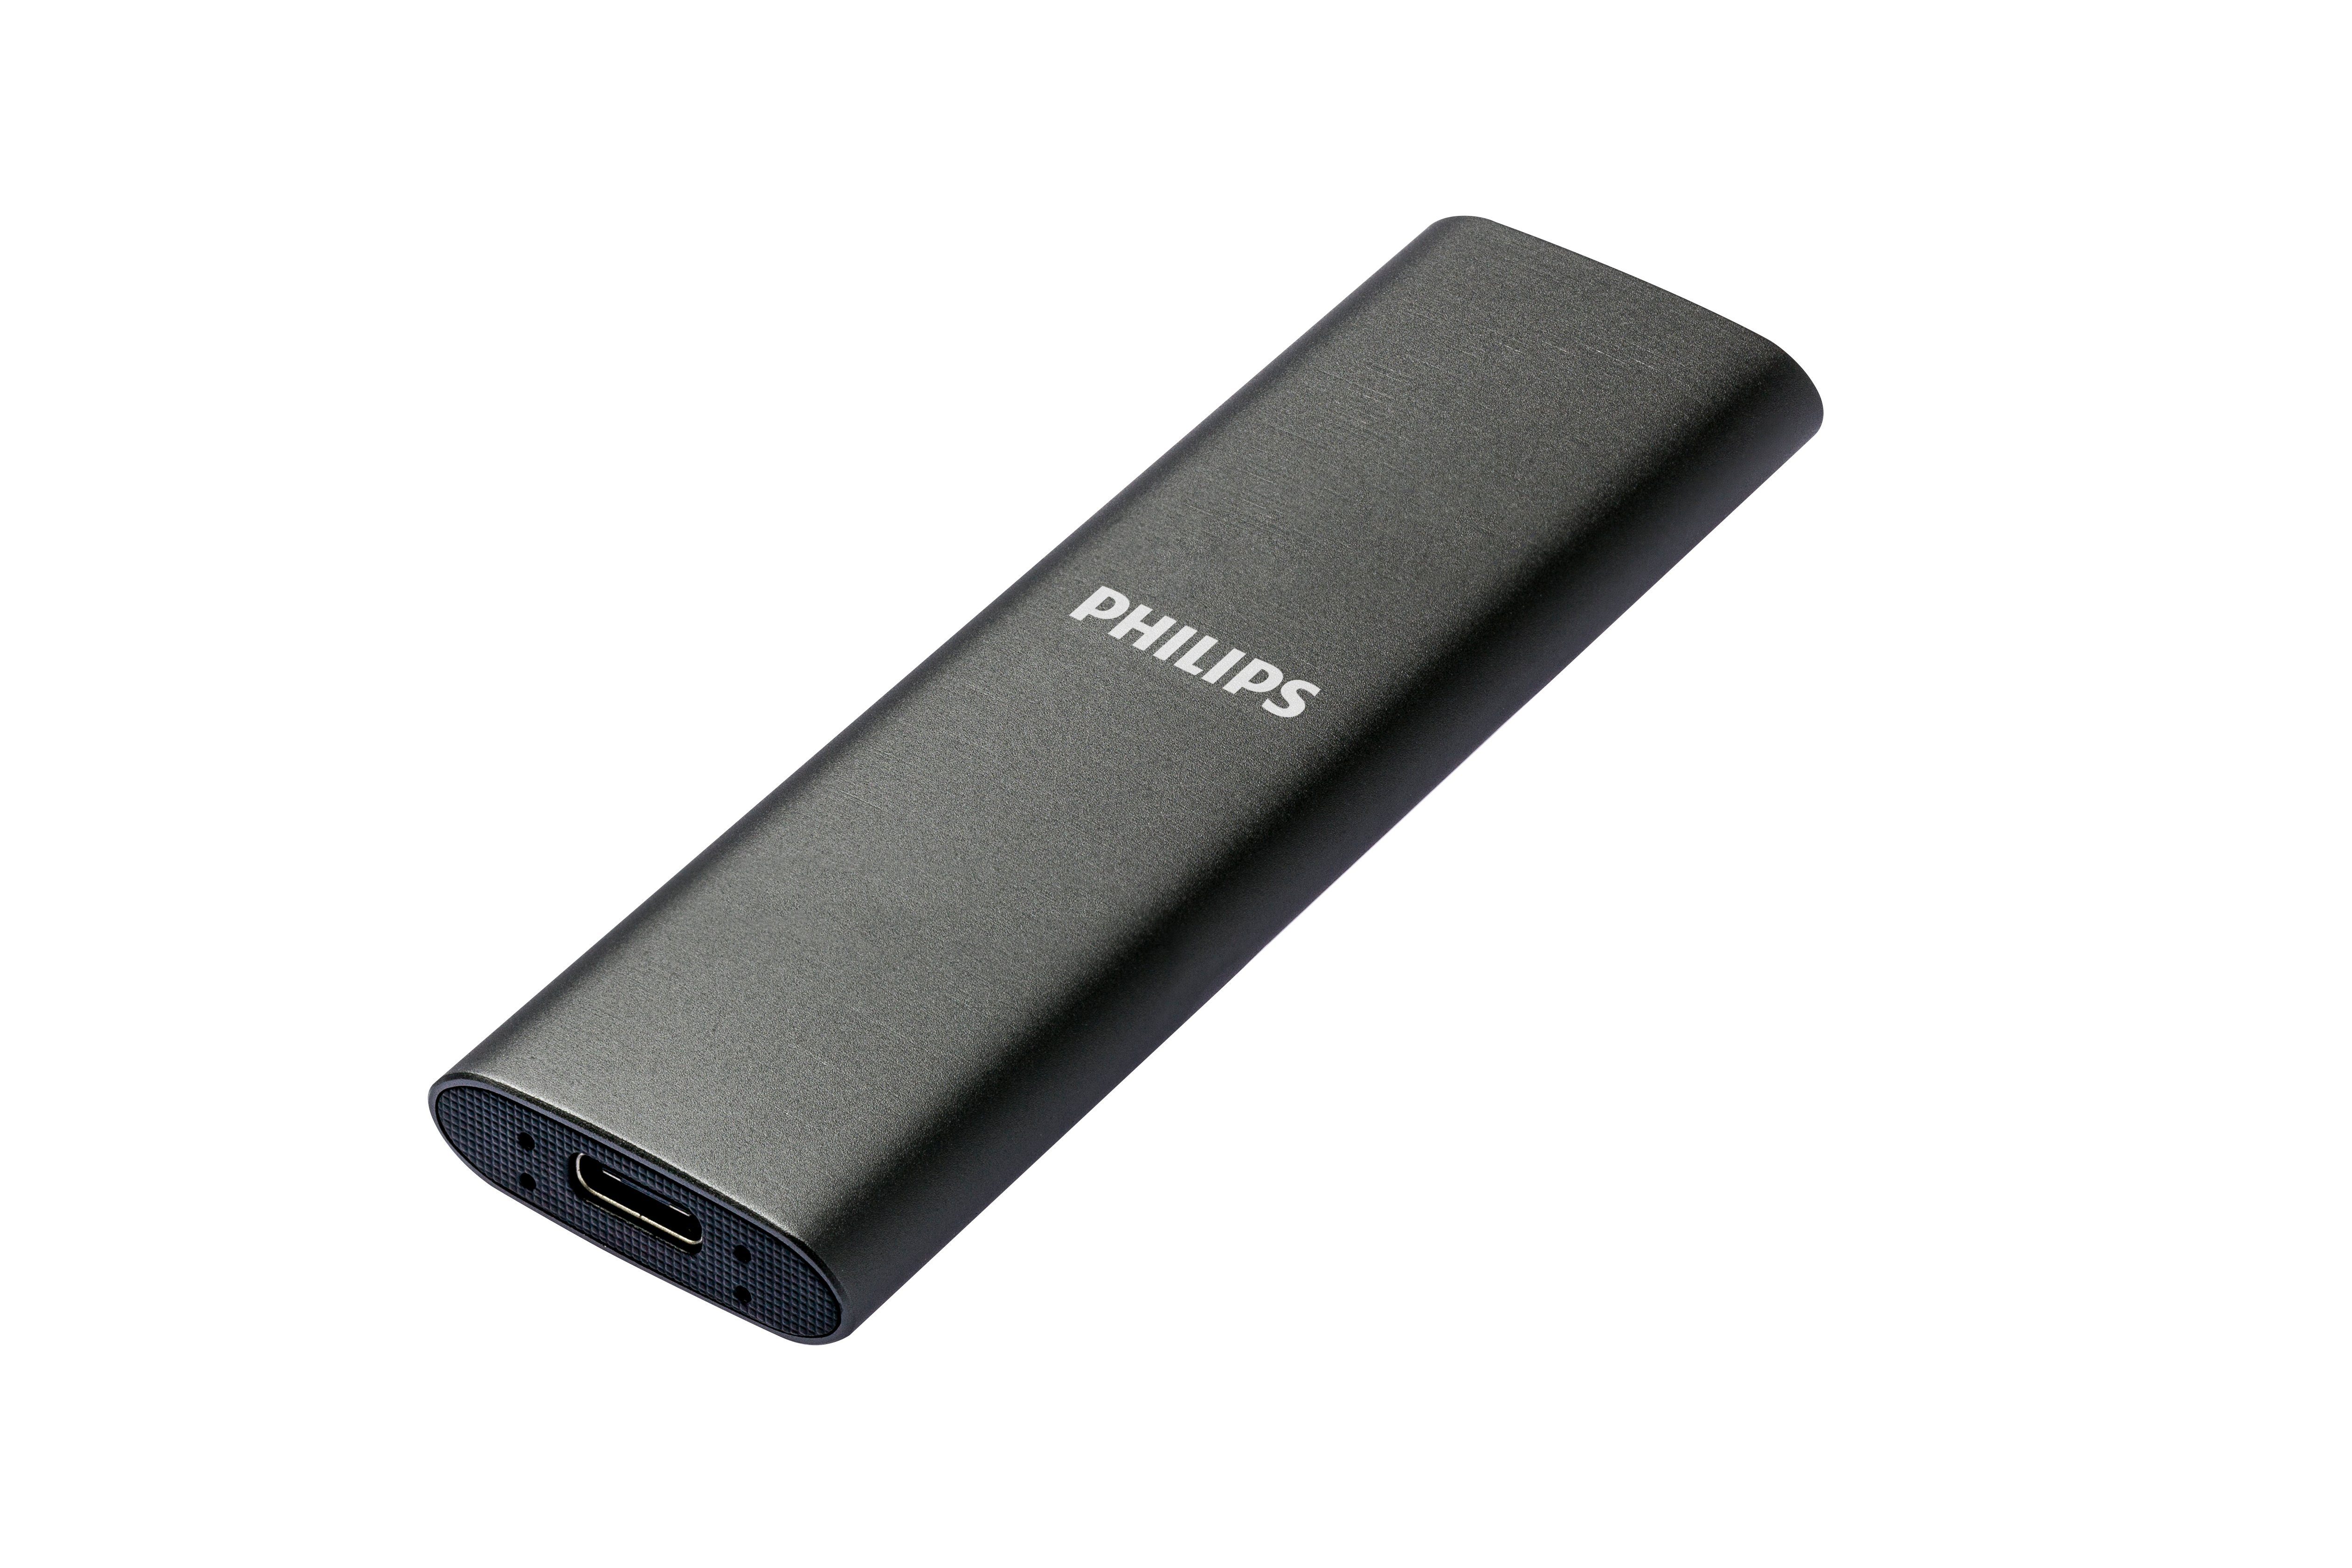 Philips FM50SS030P/00 externe SSD (500GB) Space Grey, MB/S MB/S 3.2 520 540 USB-C Lesegeschwindigkeit, Aluminium, Ultra Schreibgeschwindigkeit, SATA" Speed